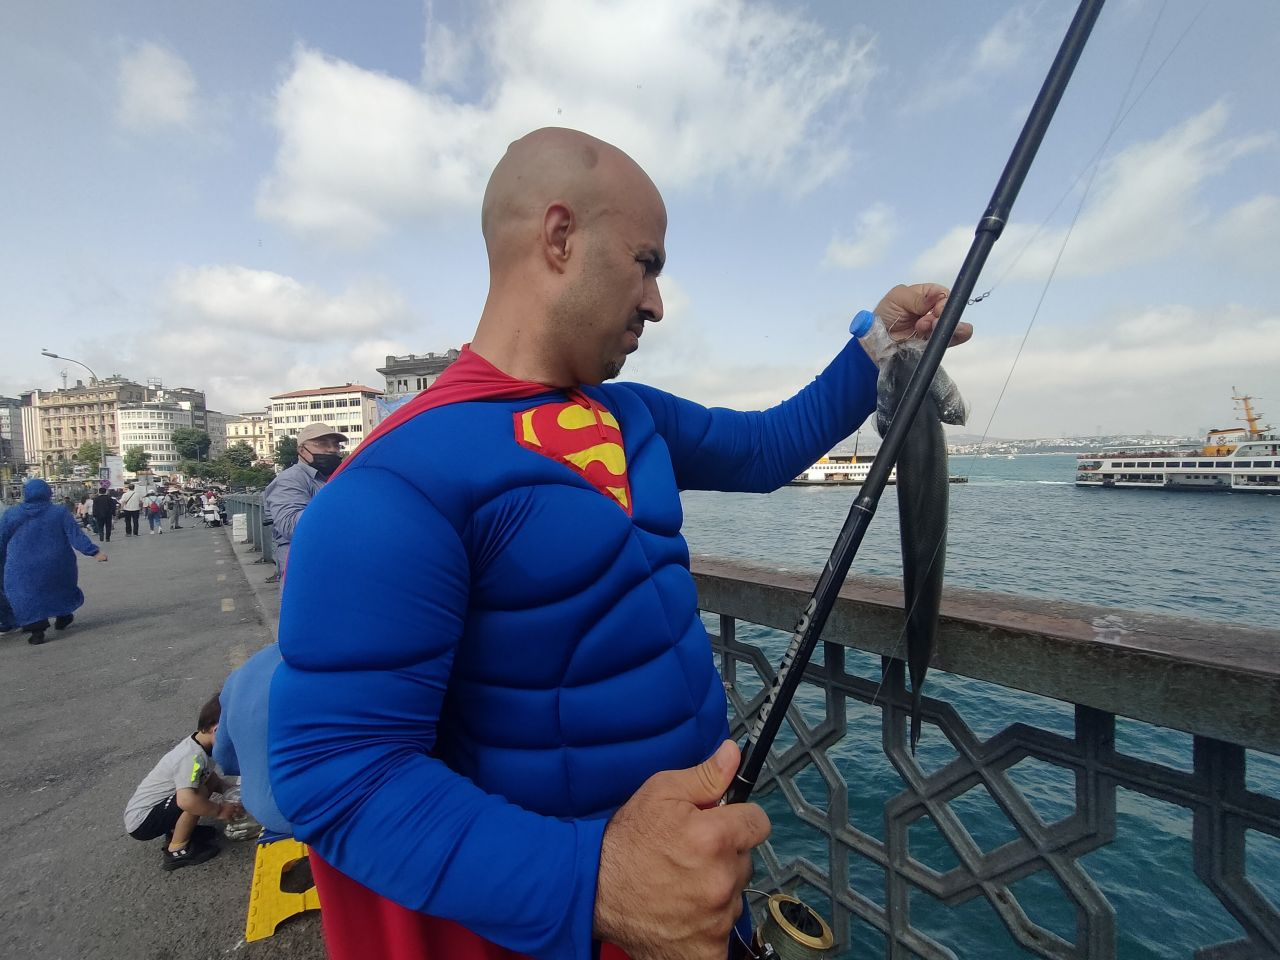 Galata'da bir garip olay... Süpermen kostümüyle balık tutmaya gitti görenler şok oldu!